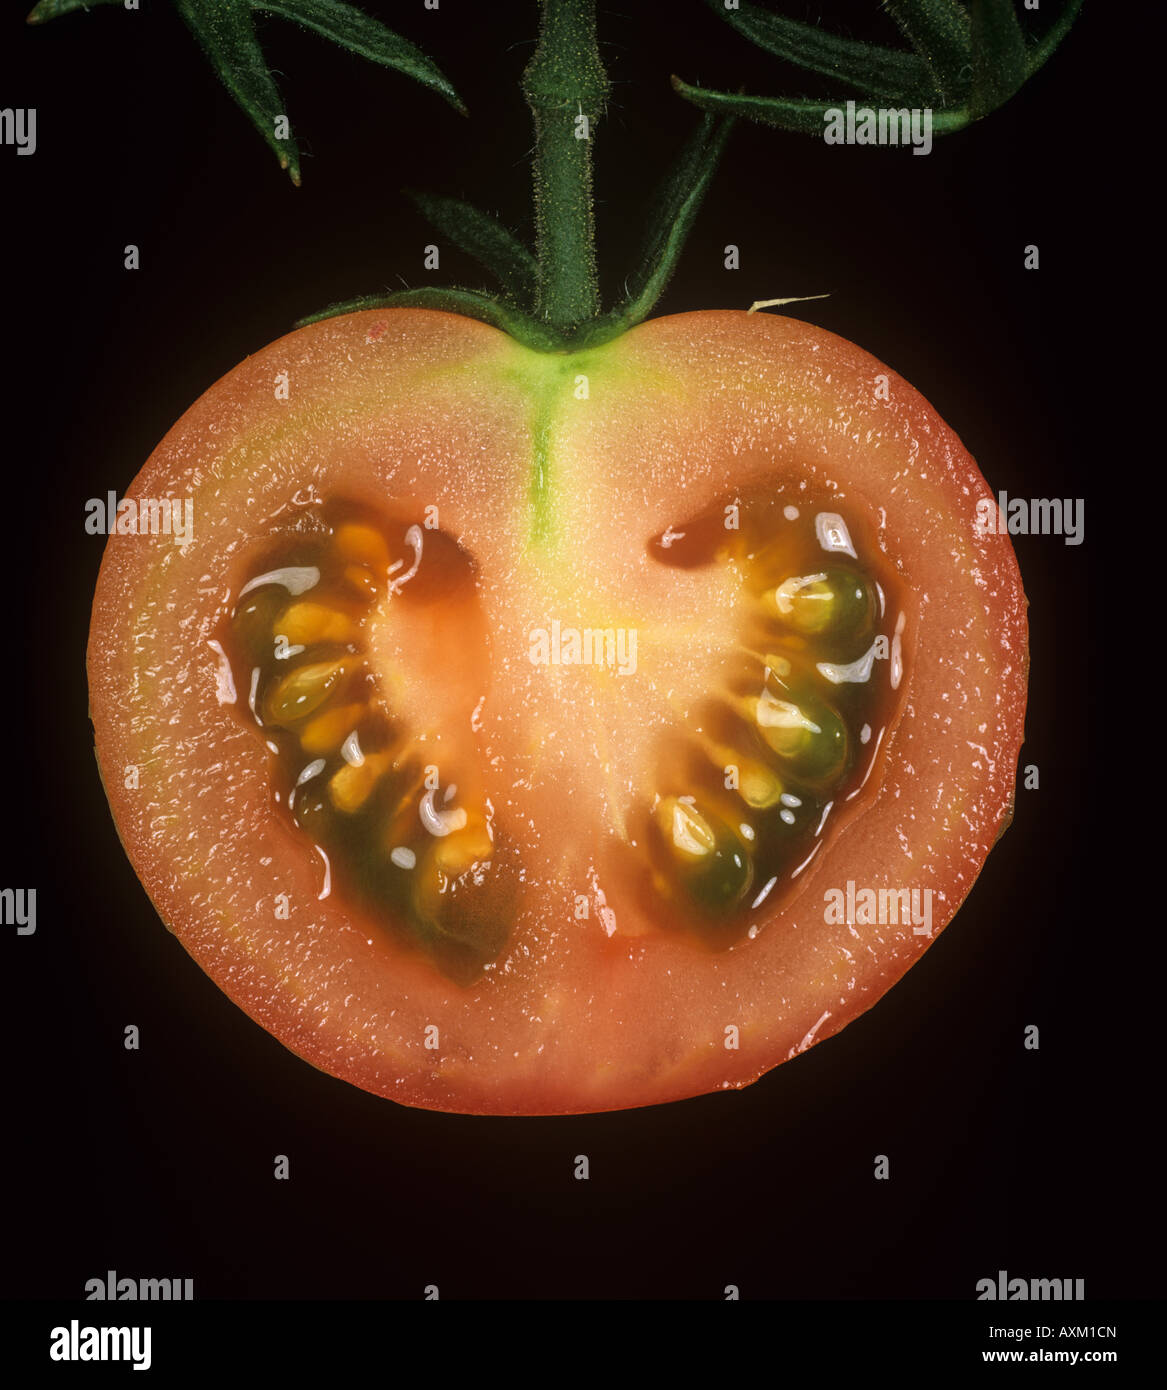 Schnitt durch eine Tomatenfrucht am Rebstock, seine Struktur zu zeigen Stockfoto